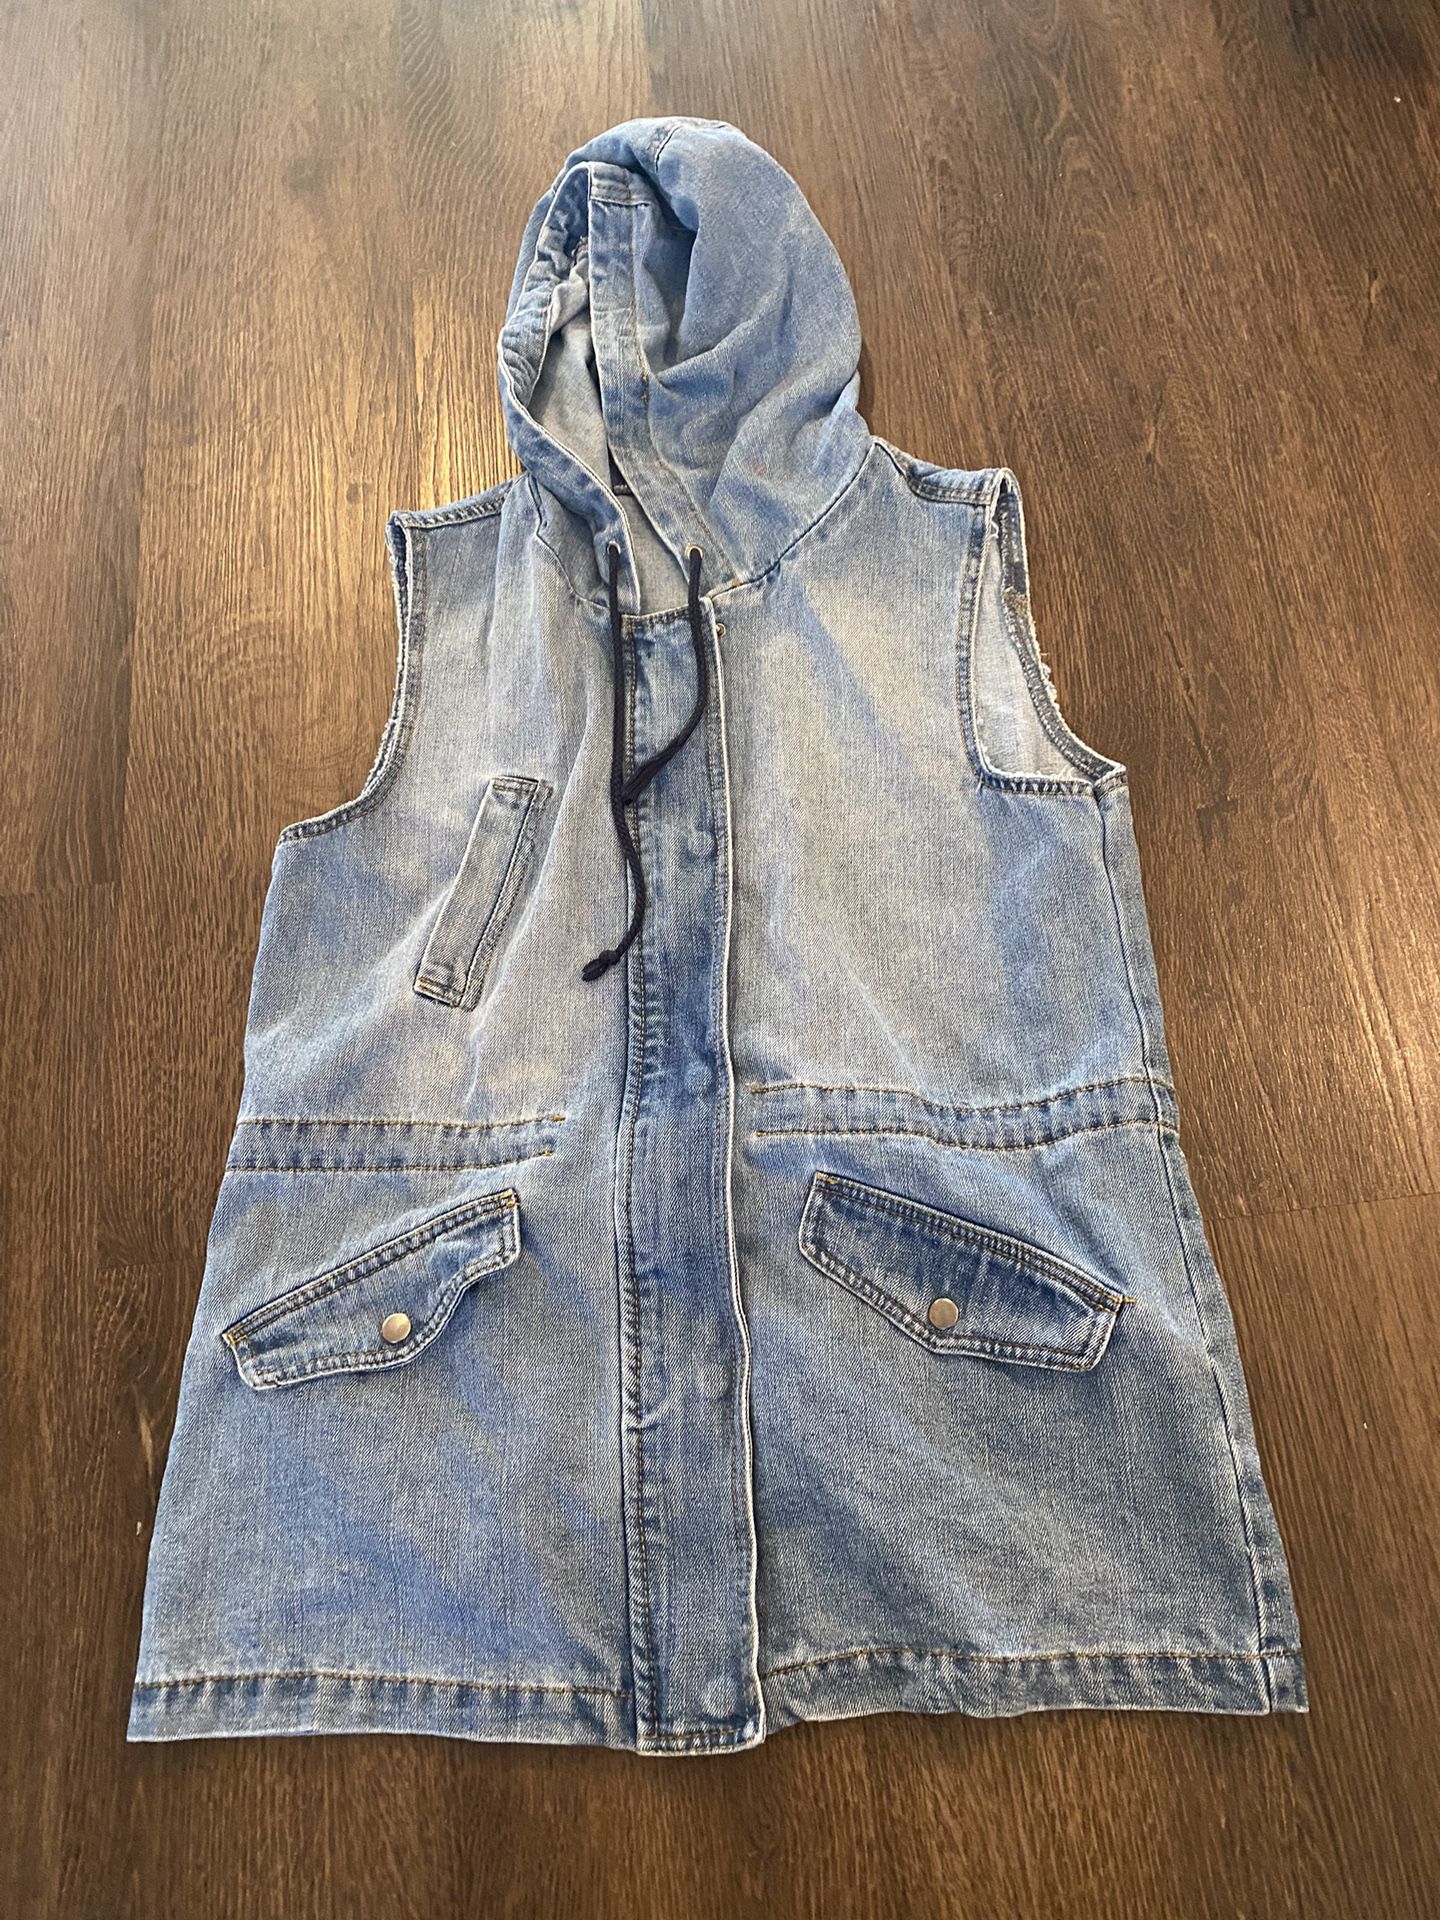 Womans Jean Vest Zip Up Size Large By Ci Sono #15